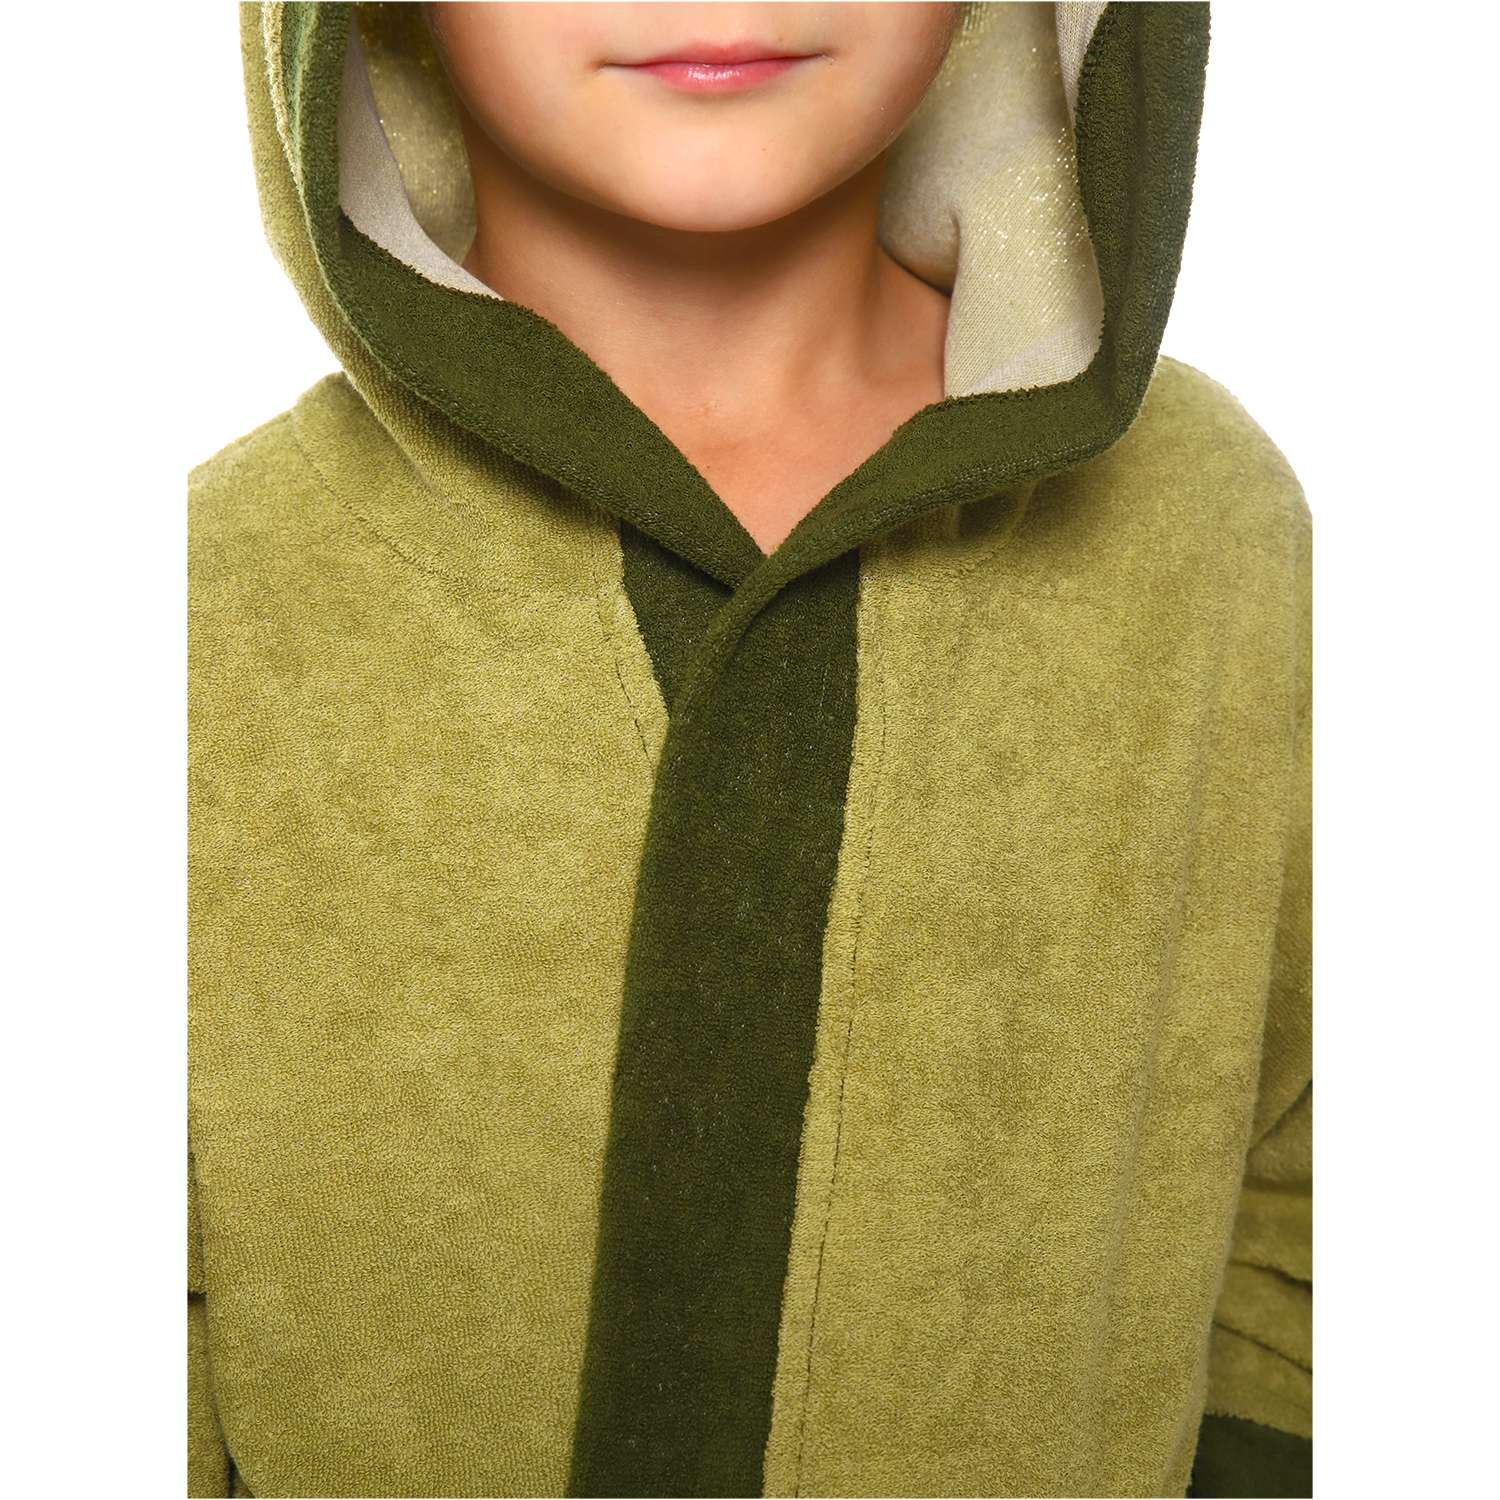 Халат Детская Одежда 8003М/оливковый - фото 7